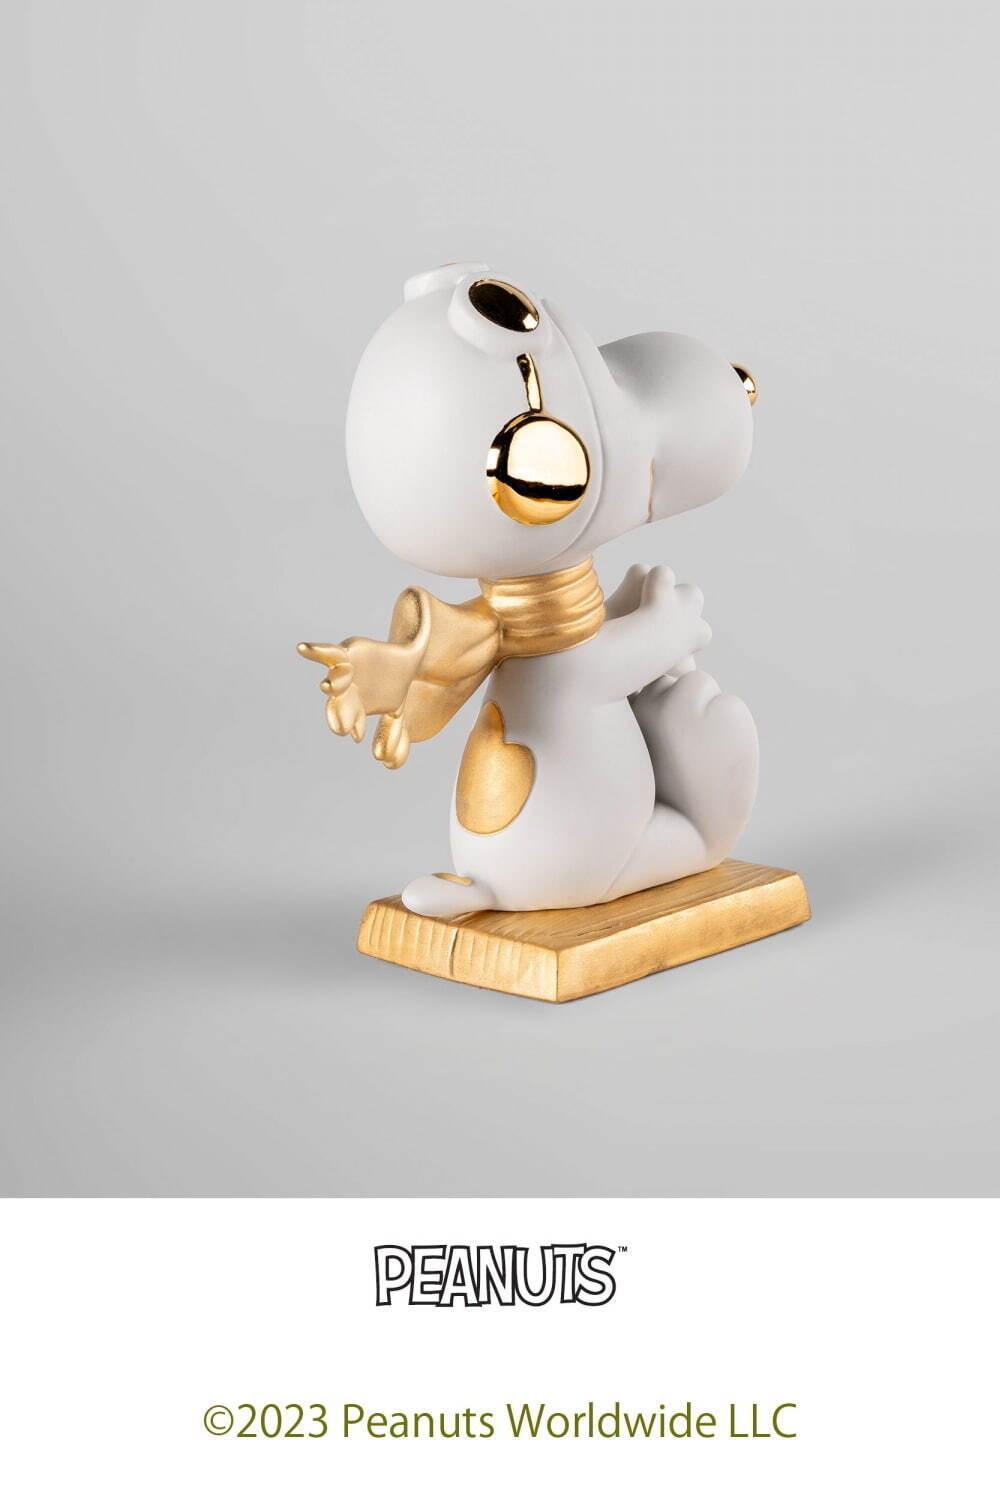 「スヌーピー(フライング・エース / White-Gold)」73,700円